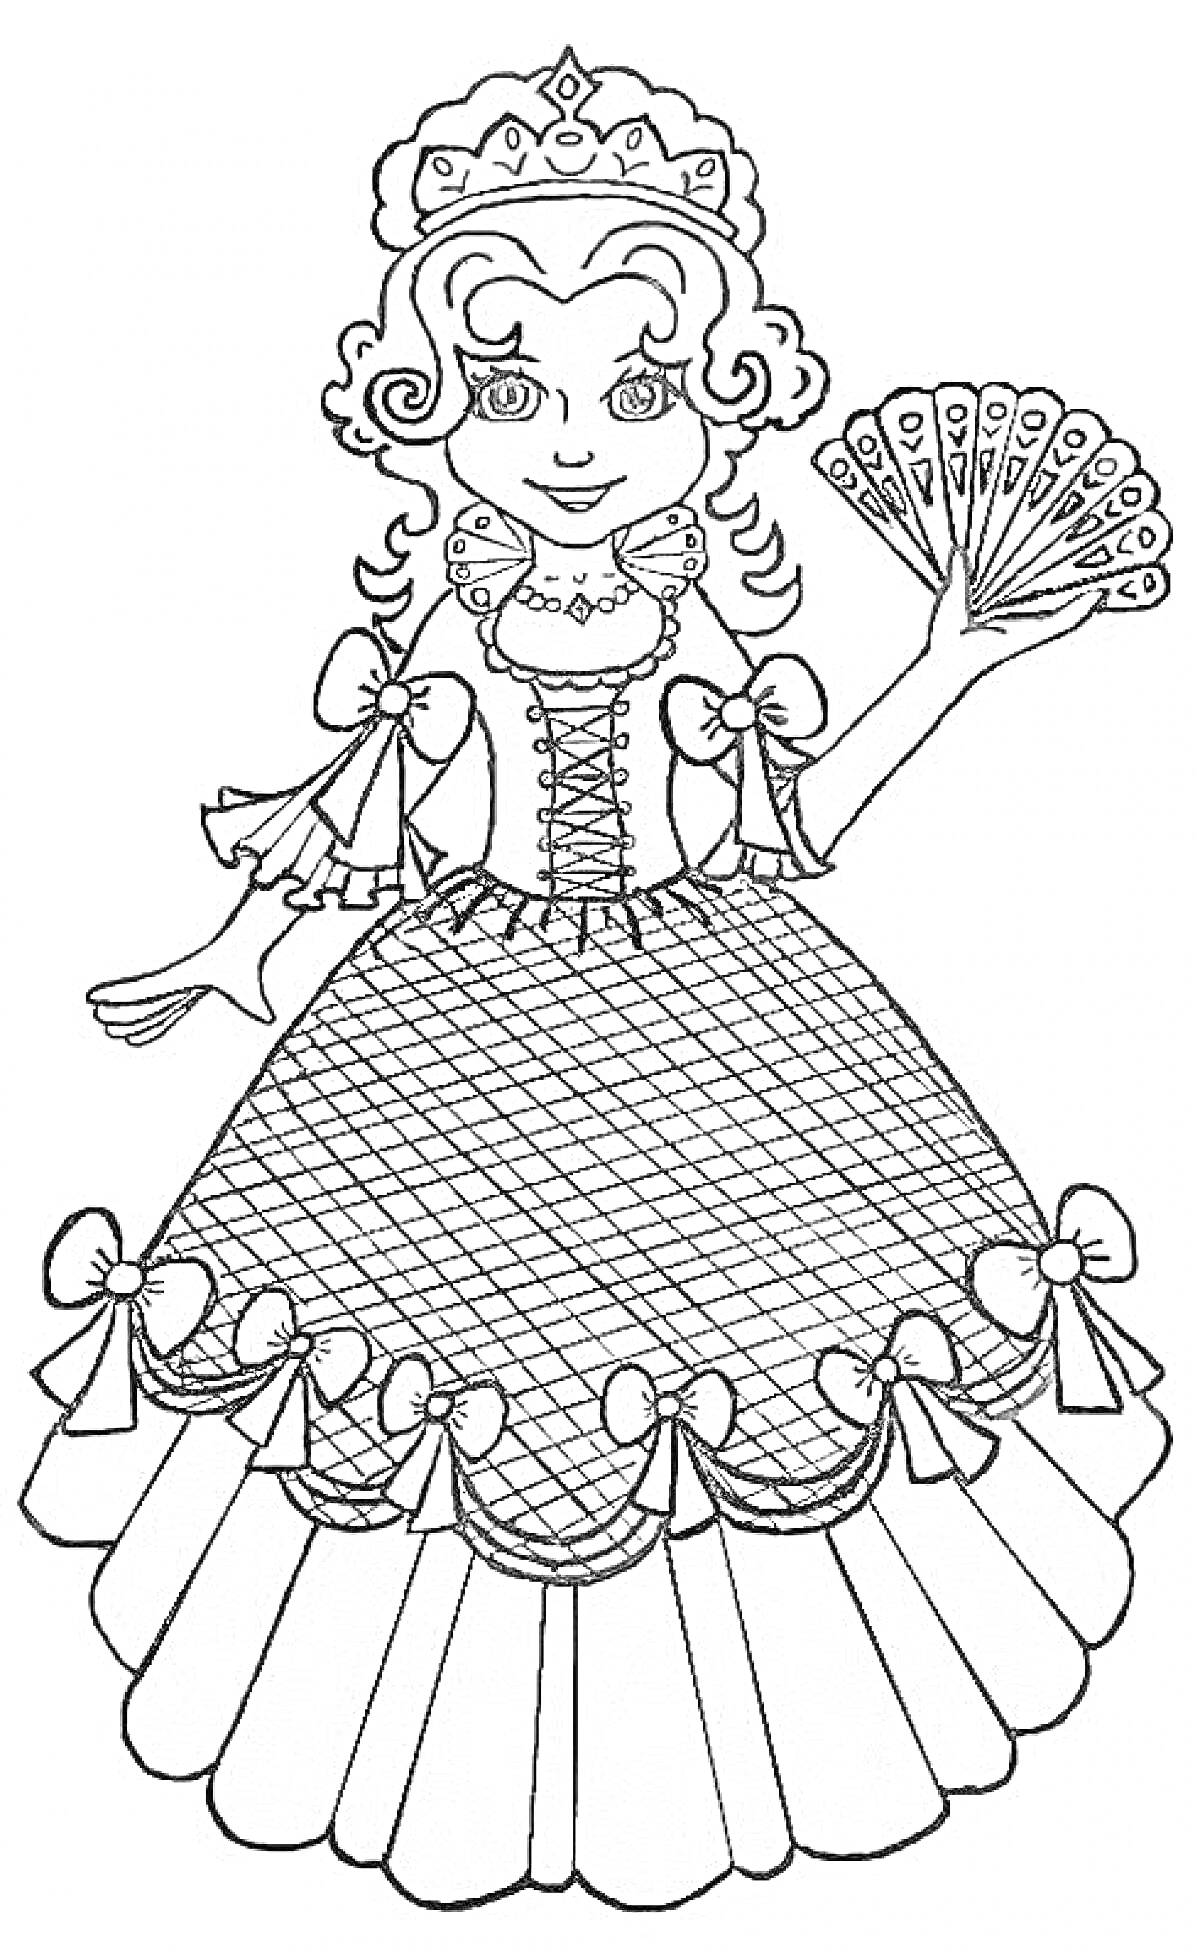 Принцесса в новогоднем костюме с веером и бантиками